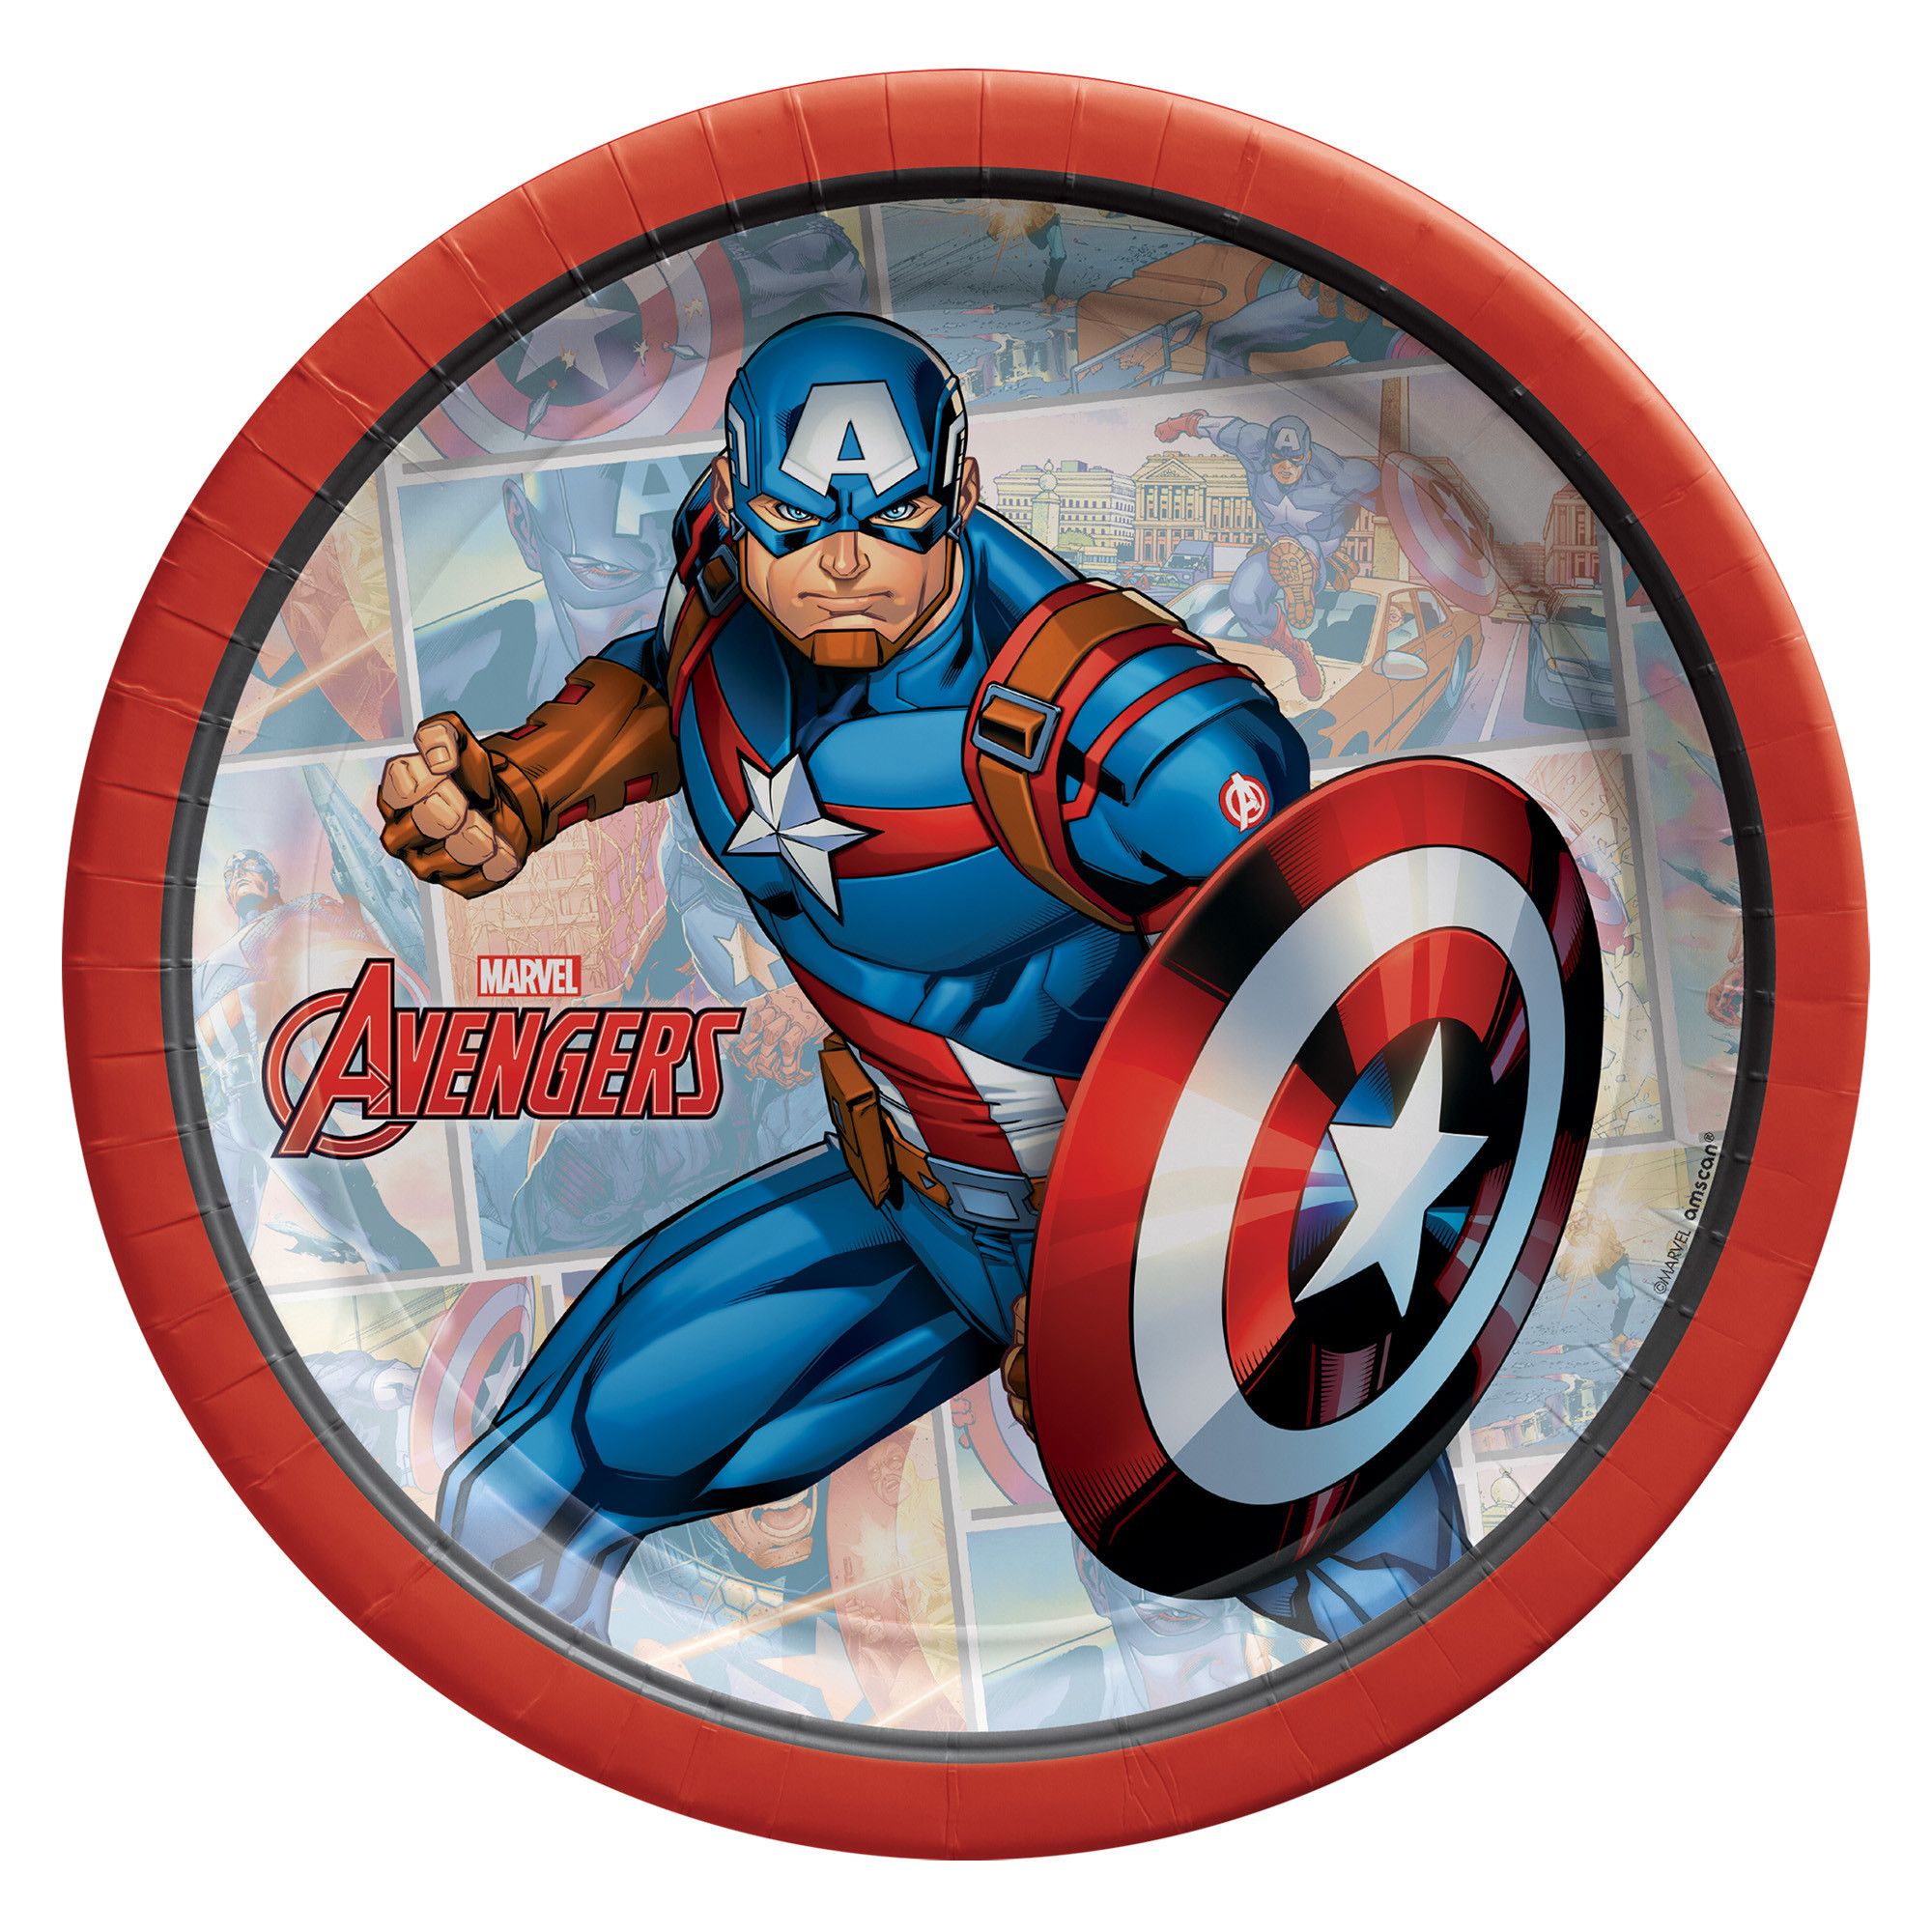 Captain America 7 Round Plates - 8 ct.